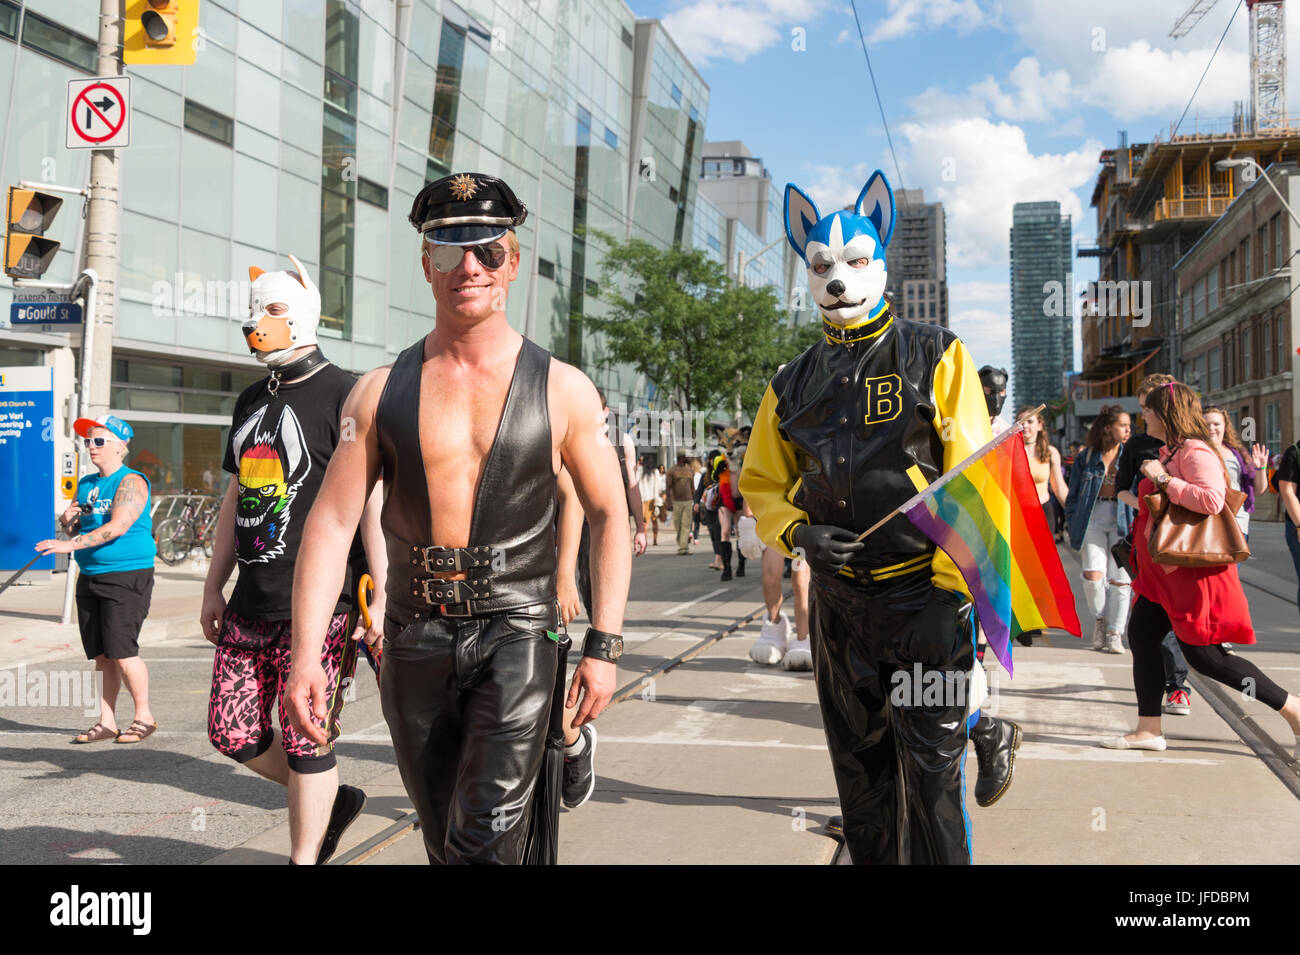 toronto-kanada-25-juni-2017-mitglieder-der-bdsm-gemeinschaft-nach-toronto-gay-pride-parade-jfdbpm.jpg